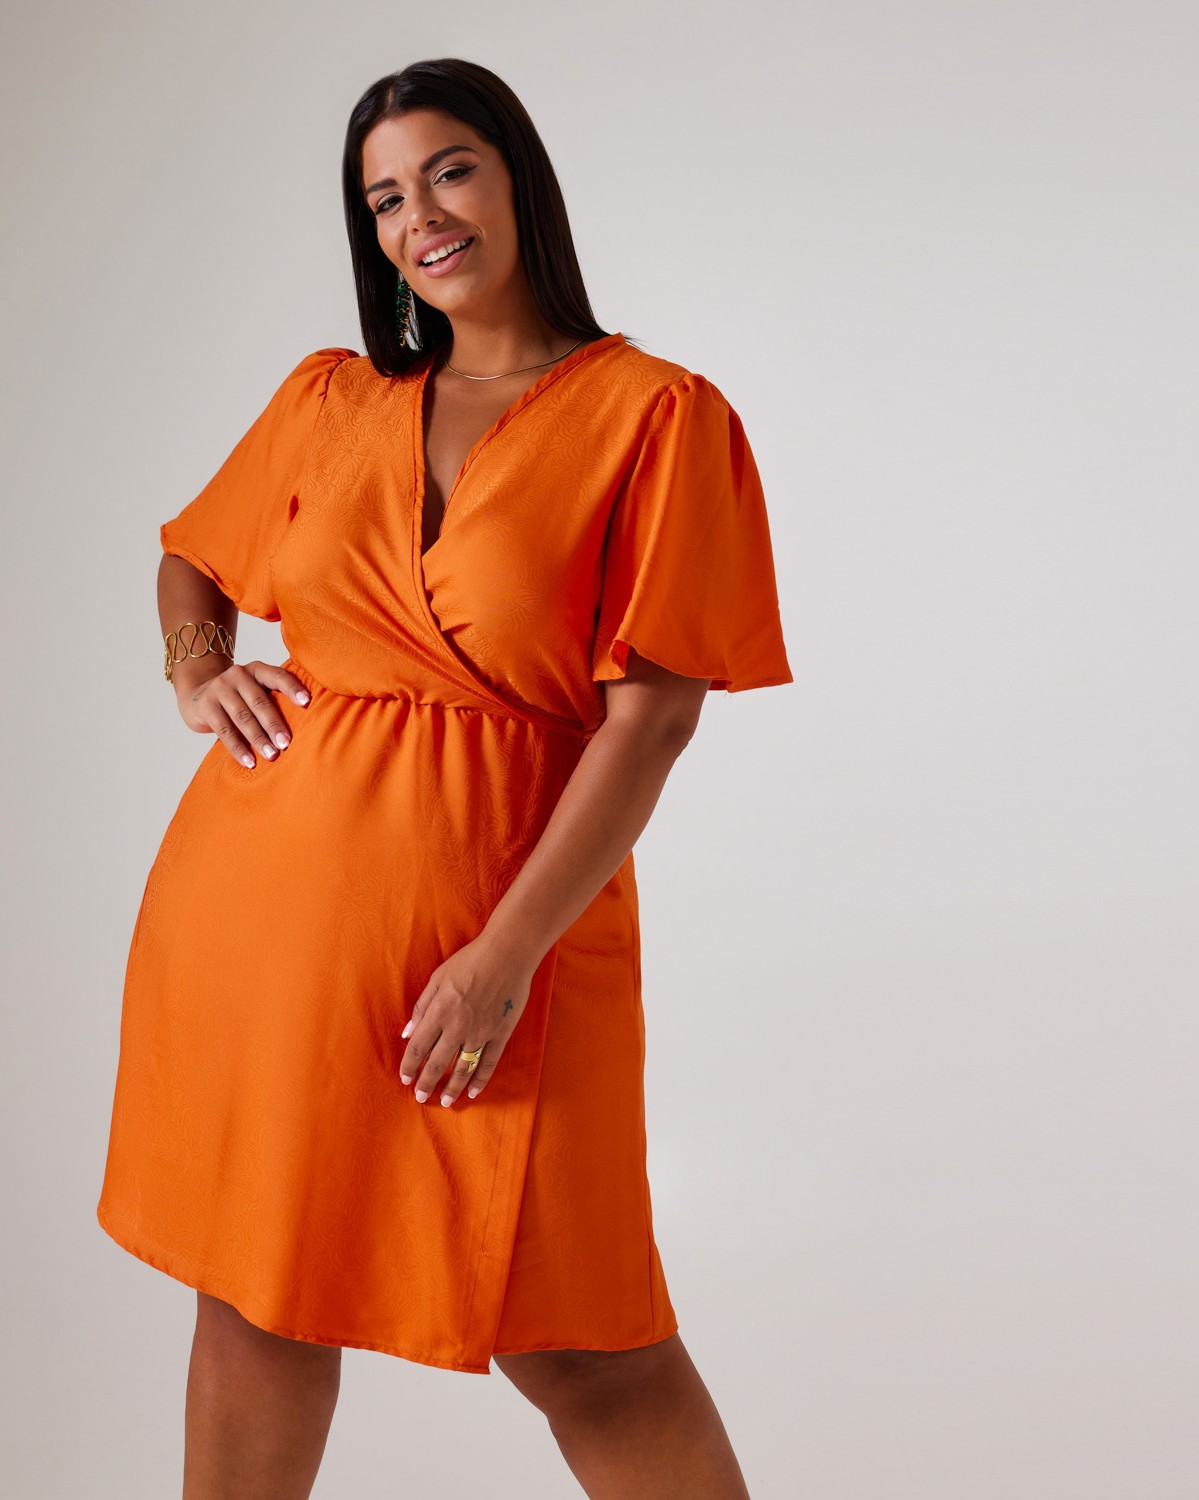 Φόρεμα Κρουαζέ Σε Ανάγλυφο Ύφασμα Καμπάνα Μανίκι Πορτοκαλί